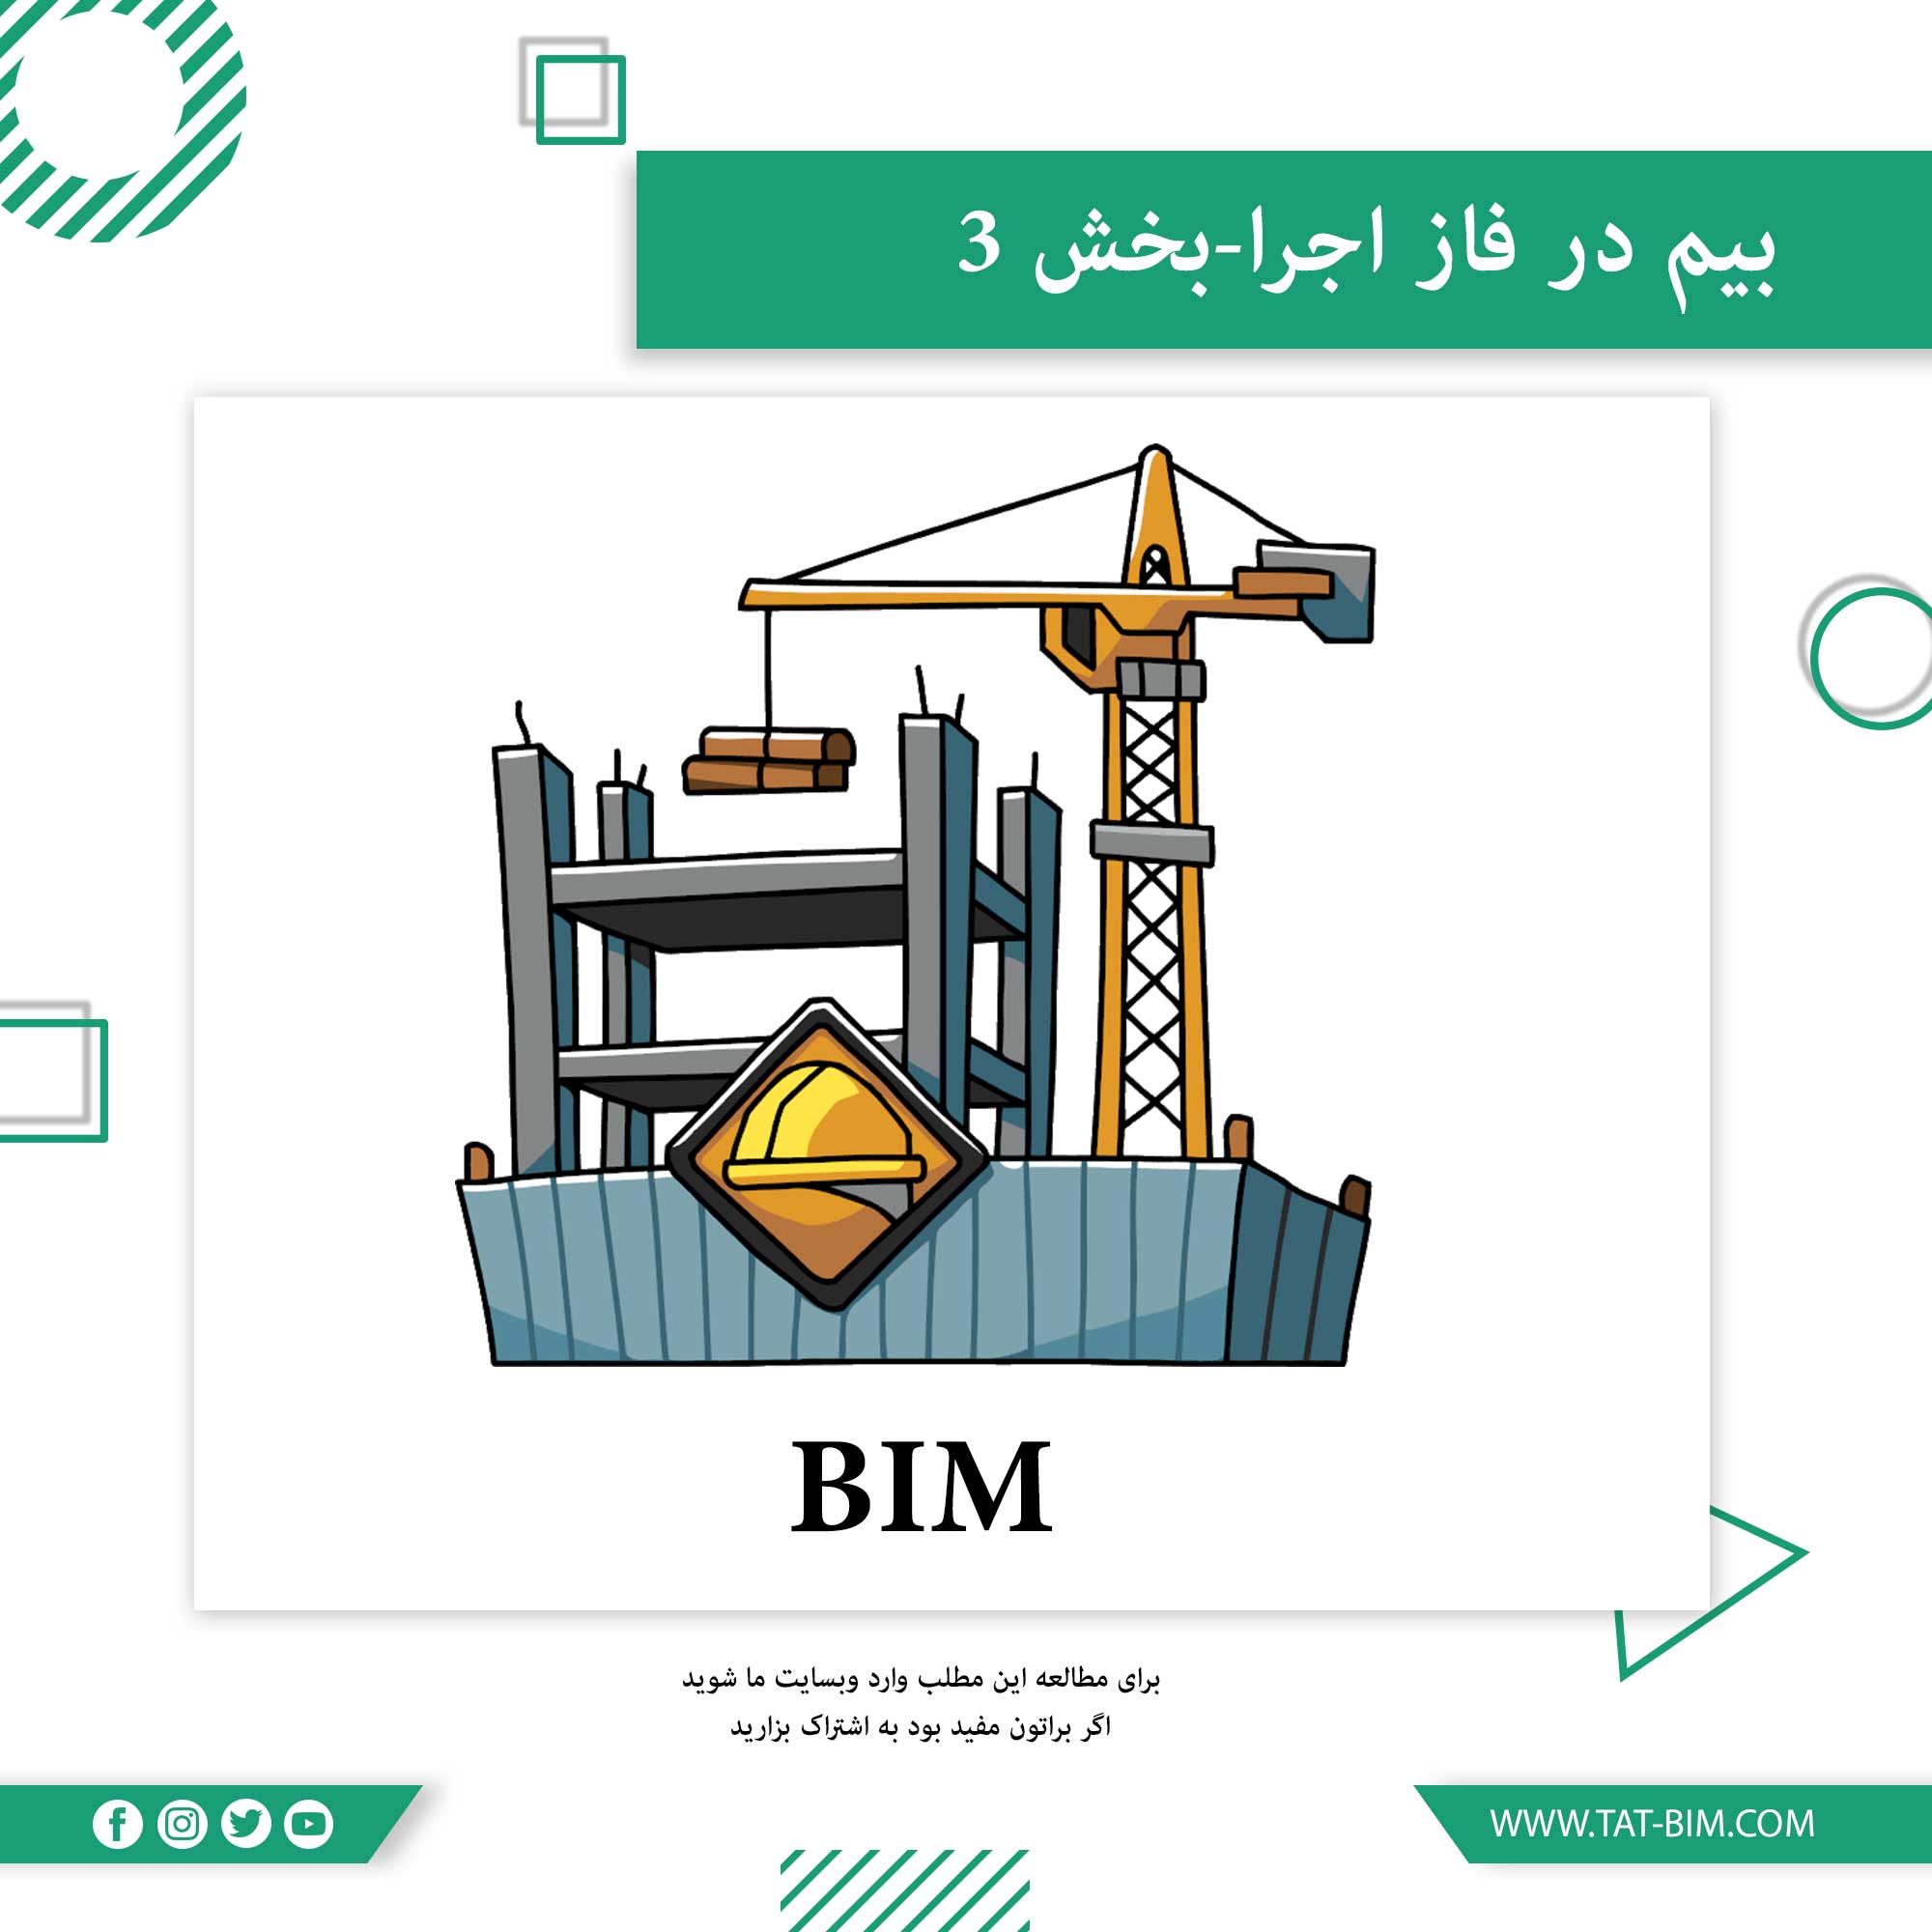 استفاده از BIM در فاز ساخت-۱۰ قدم برای شروع پیاده سازی مدلسازی اطلاعات ساخت در فاز ساخت-قدم۵ و۶ و۷